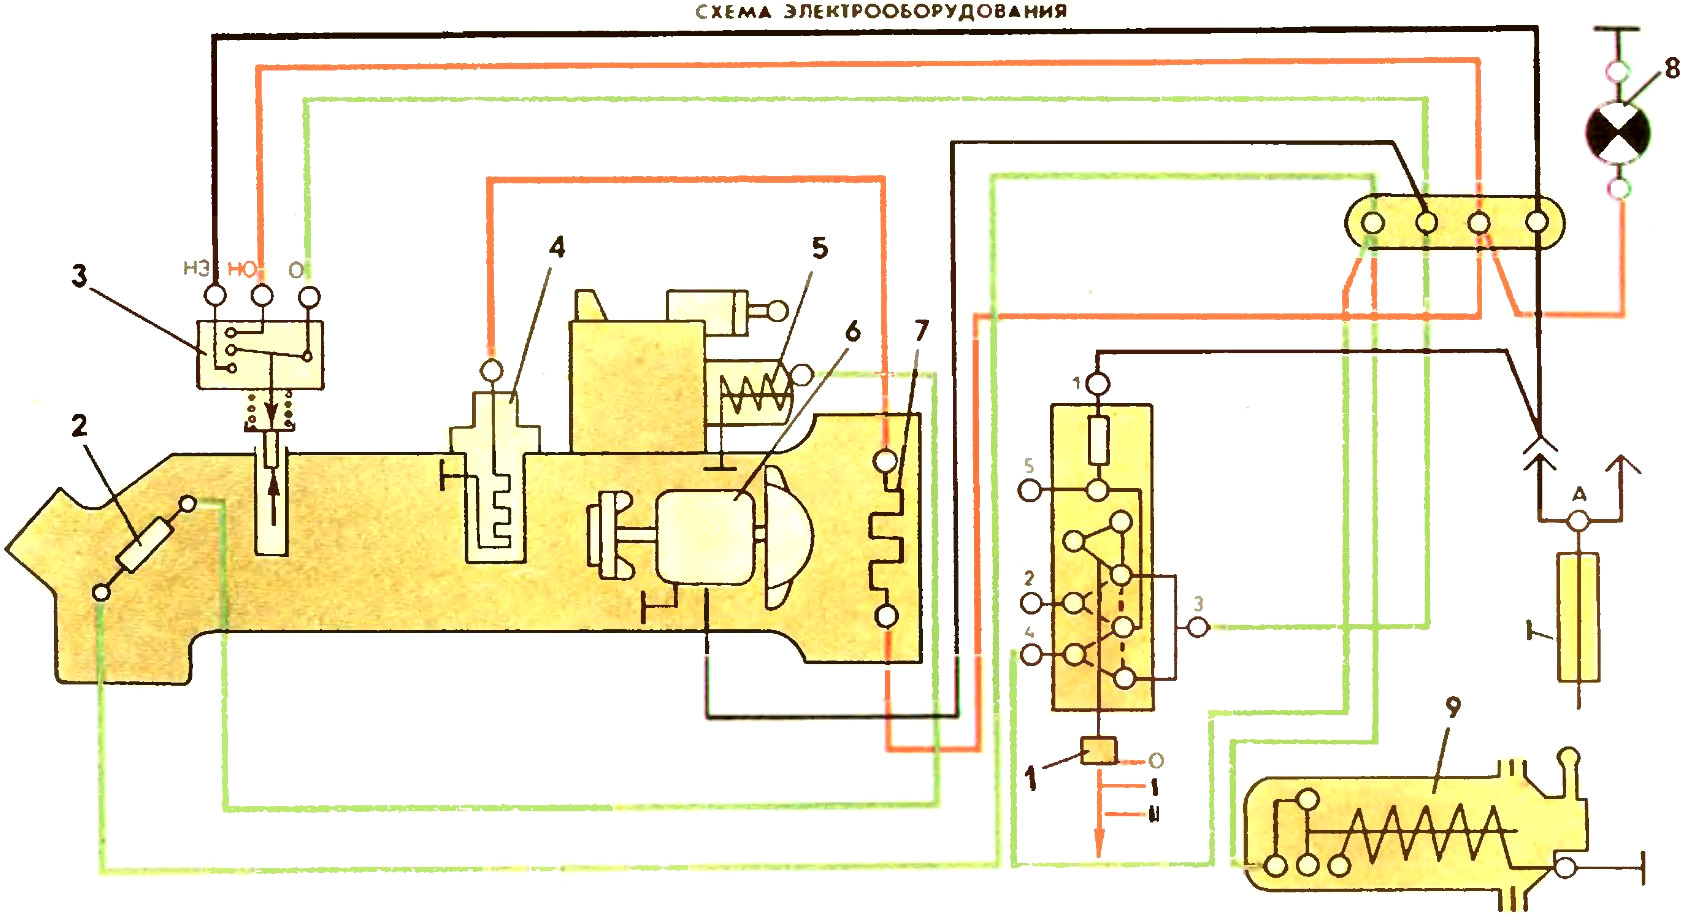 Схема электрооборудования системы отопления автомобиля ЗАЗ-968М Запорожец